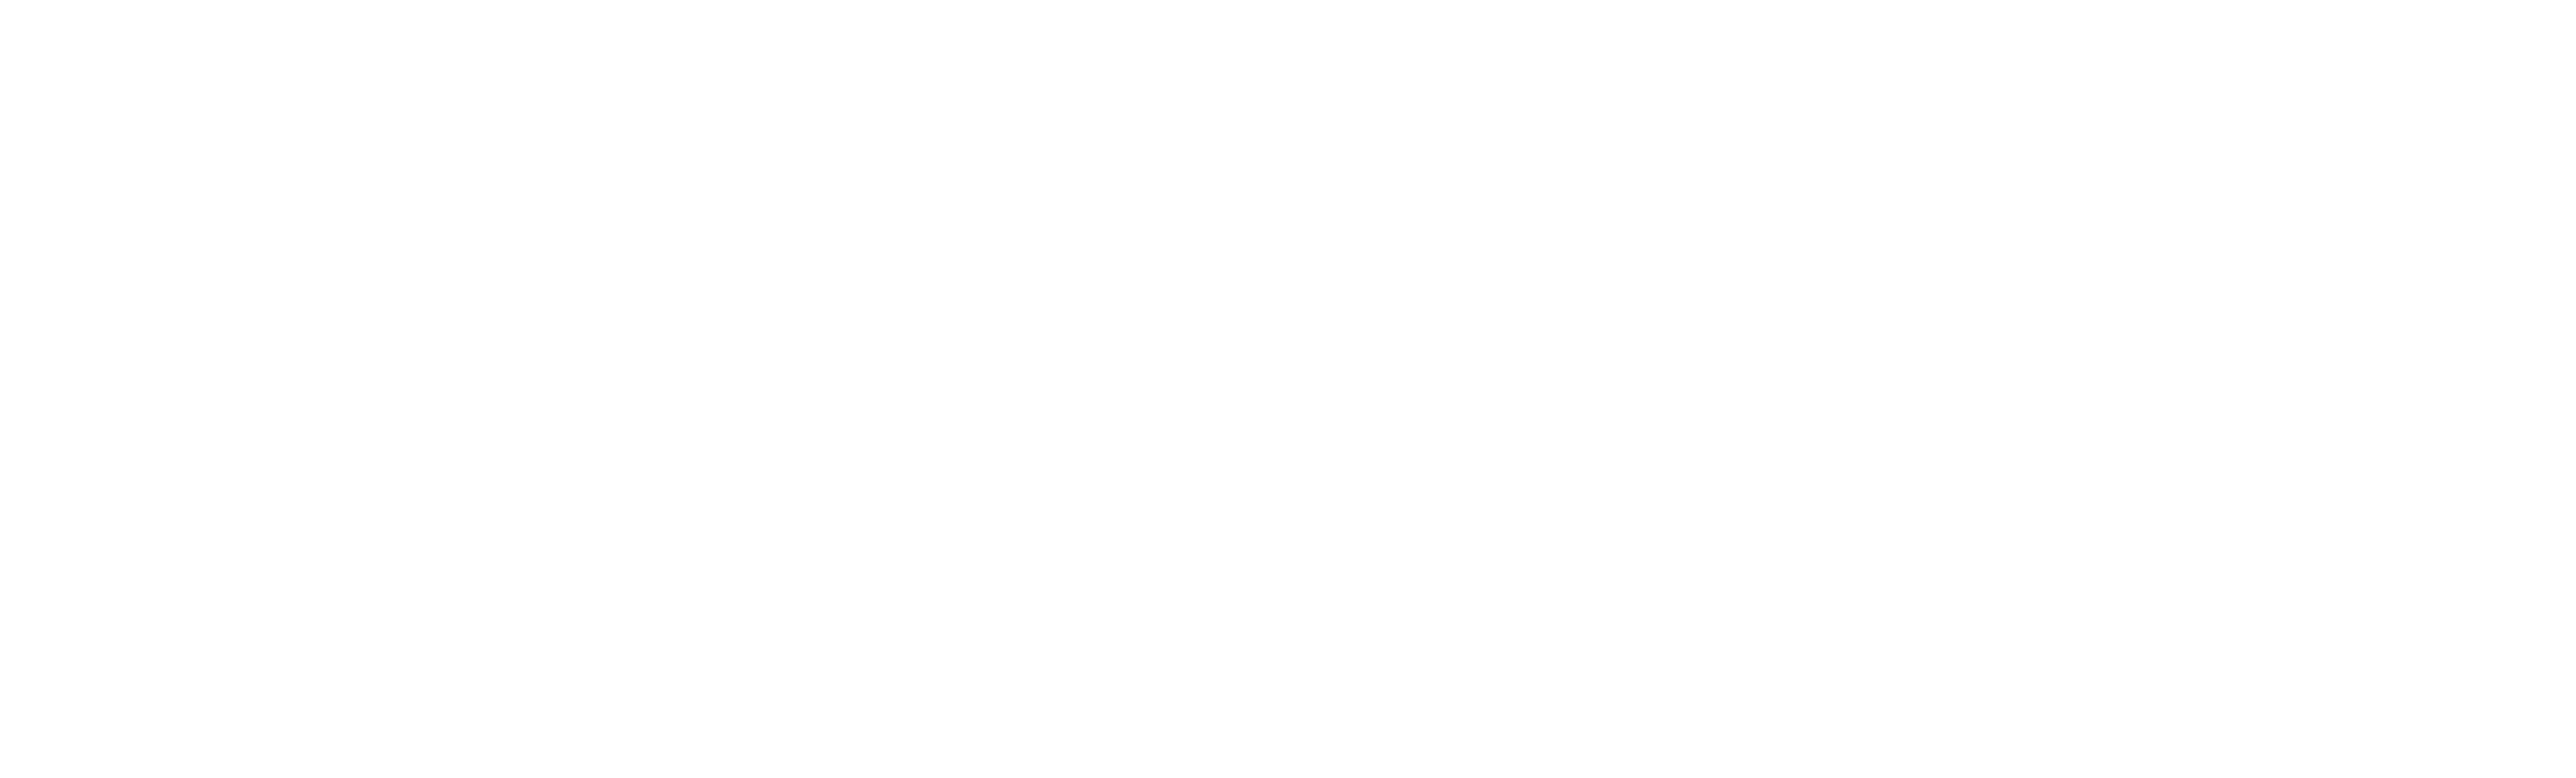 spotify-logo.png